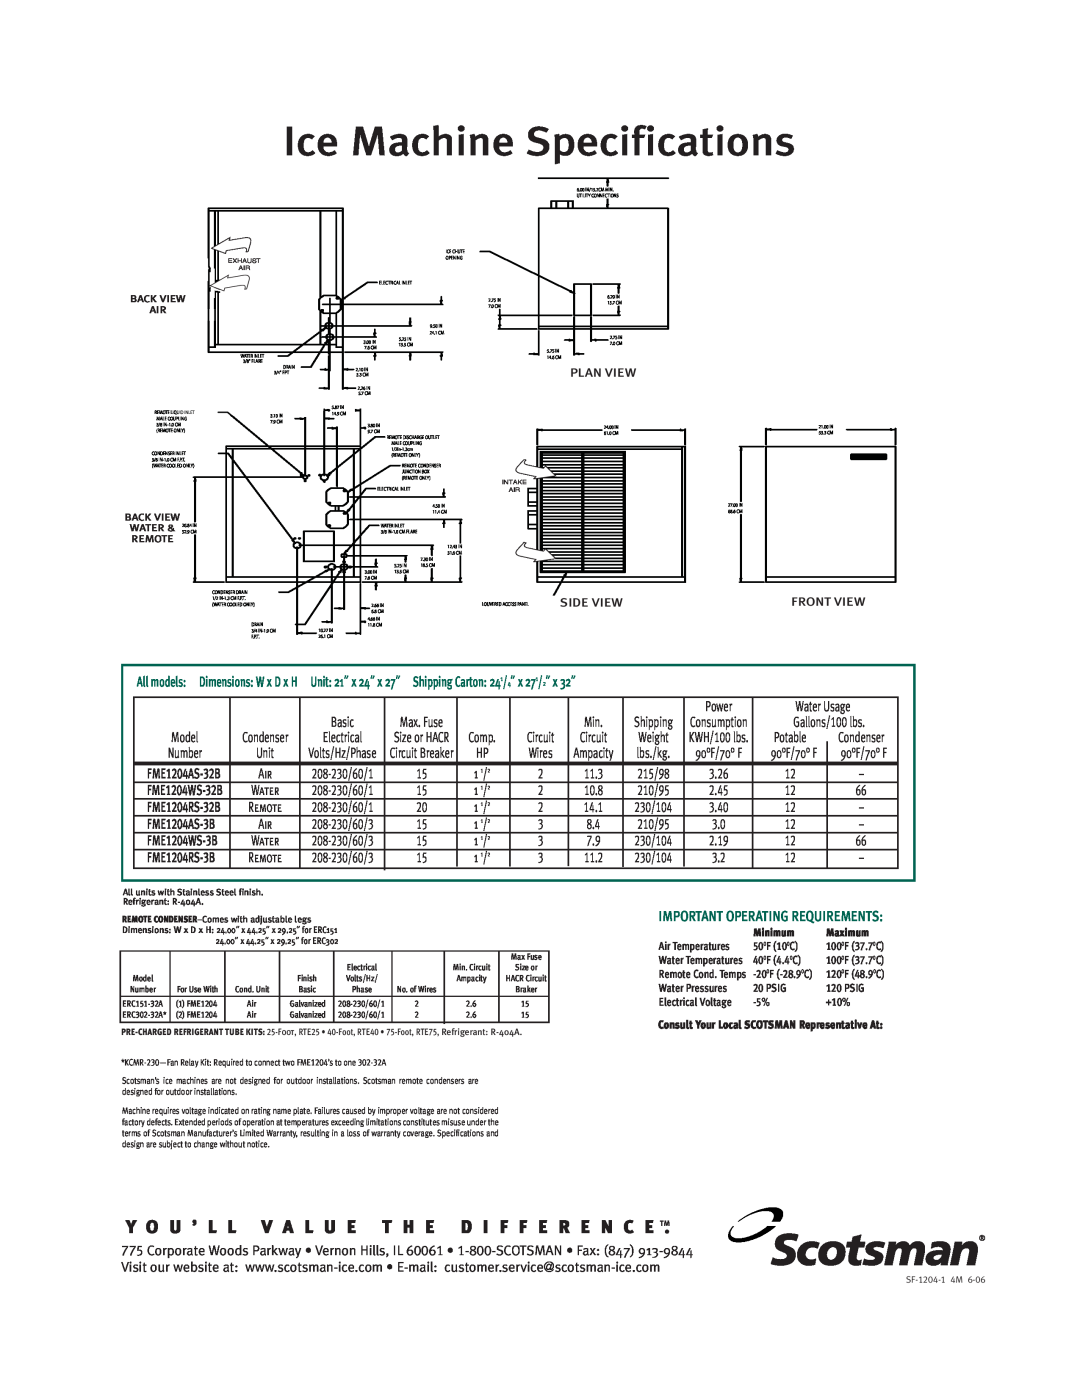 Scotsman Ice FME 1204 warranty Planview, NE654/954, FME804/1204 